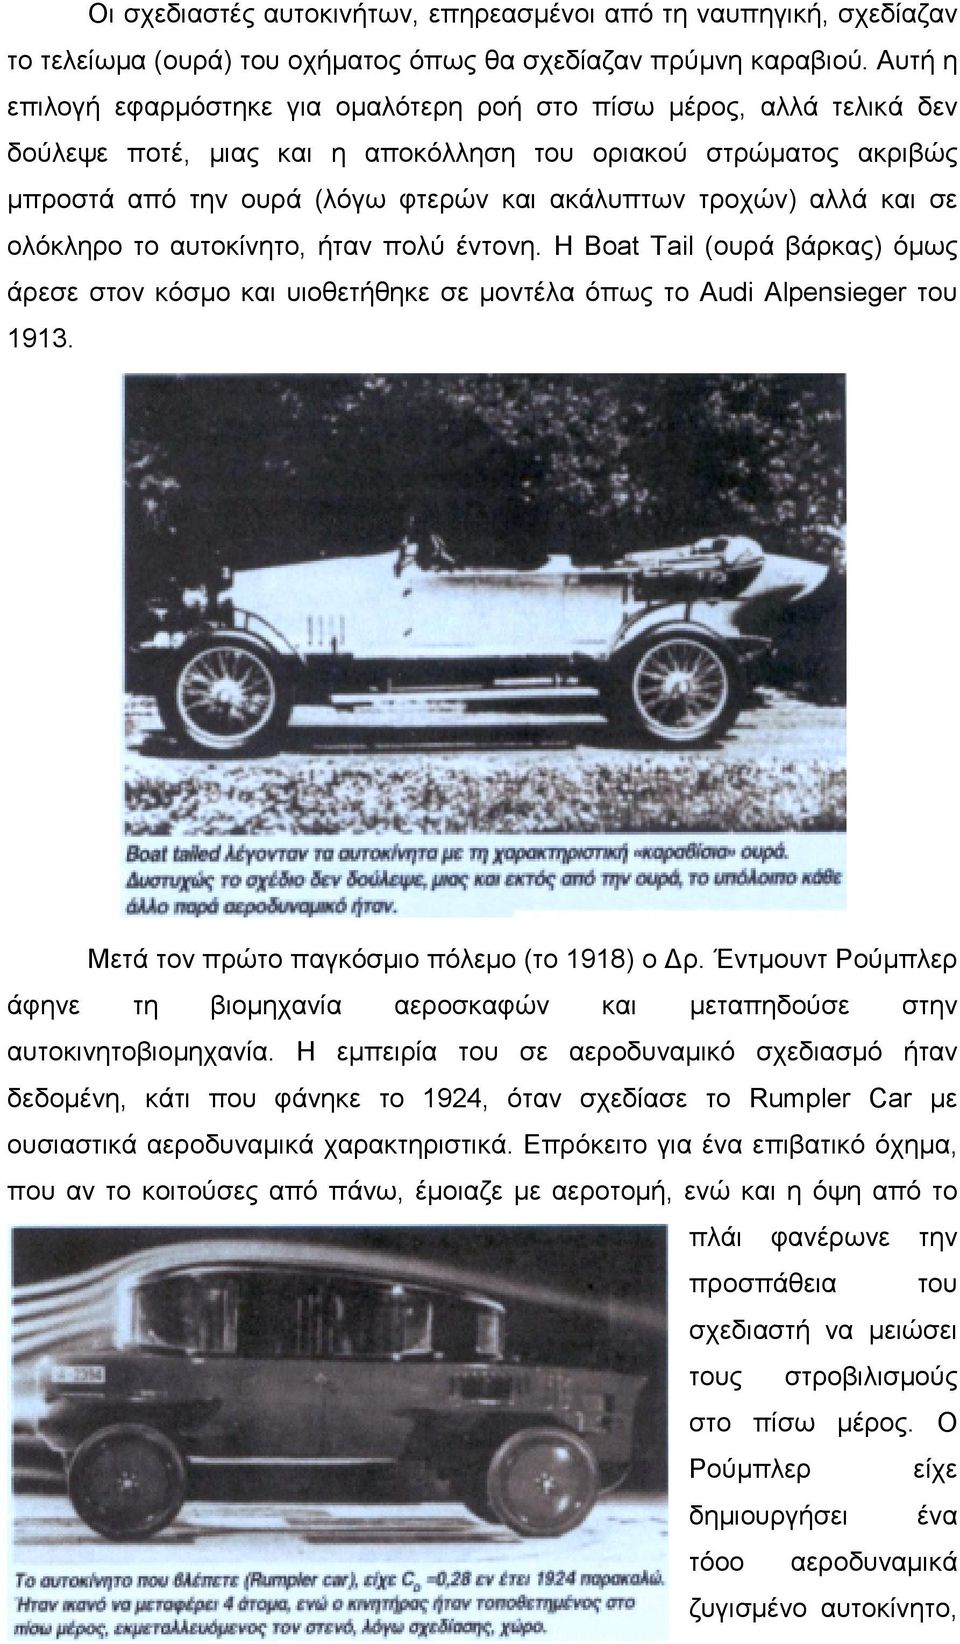 αλλά και σε ολόκληρο το αυτοκίνητο, ήταν πολύ έντονη. Η Boat Tail (ουρά βάρκας) όμως άρεσε στον κόσμο και υιοθετήθηκε σε μοντέλα όπως το Audi Alpensieger του 1913.